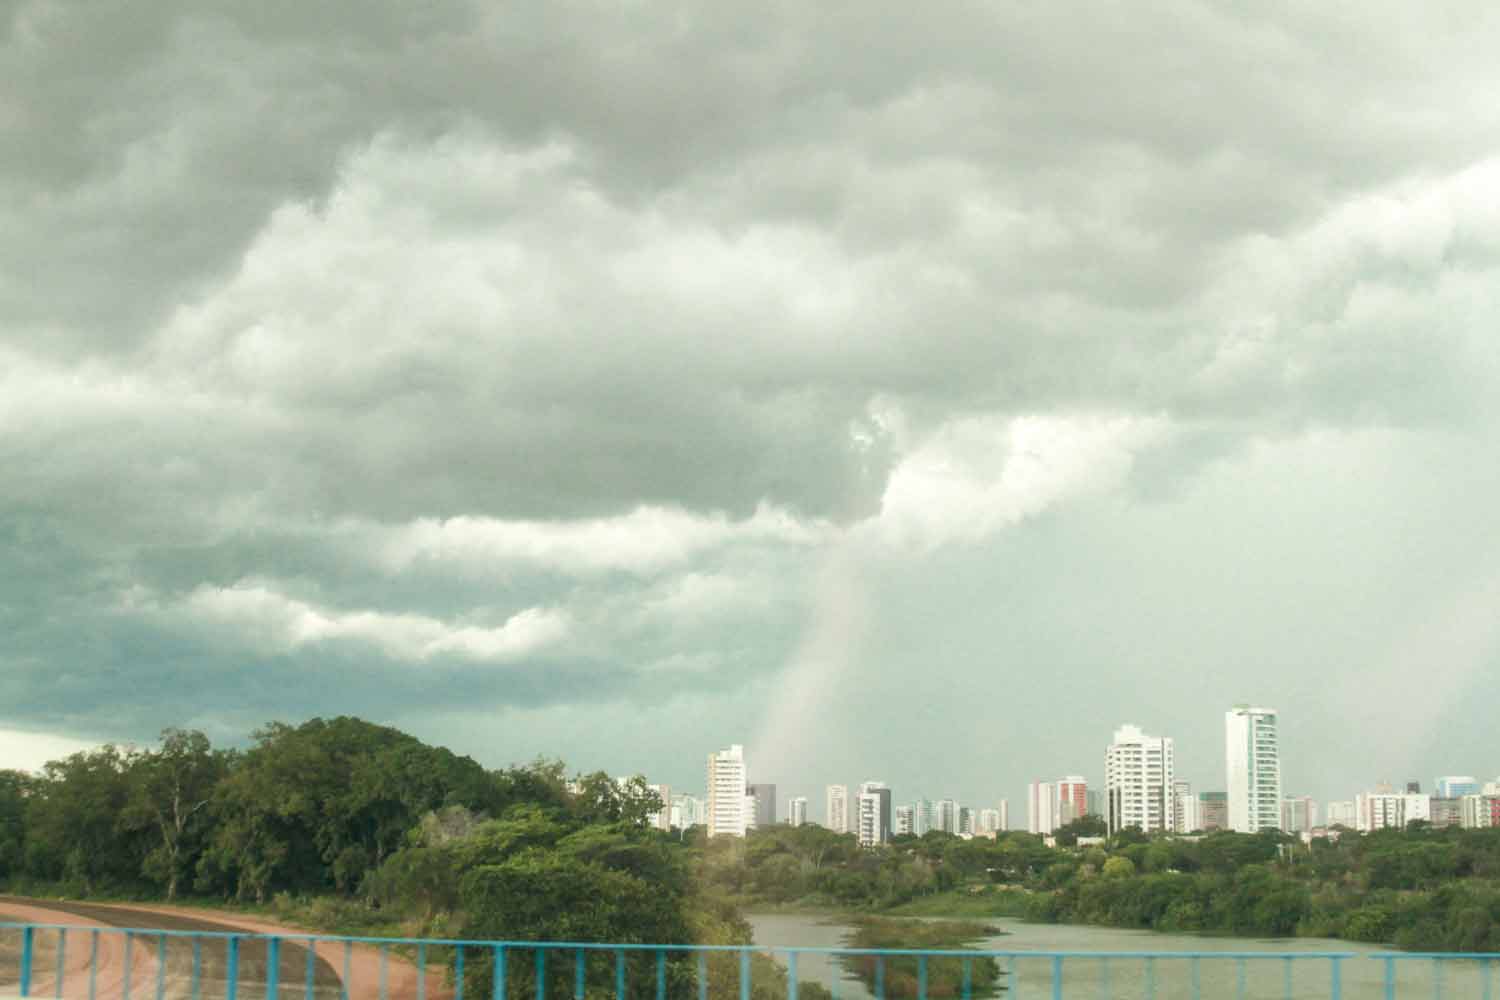 Previsão é de mais chuva em Teresina para os próximos dias | FOTO: Raíssa MoraisPrevisão é de mais chuva em Teresina para os próximos dias | FOTO: Raíssa Morais